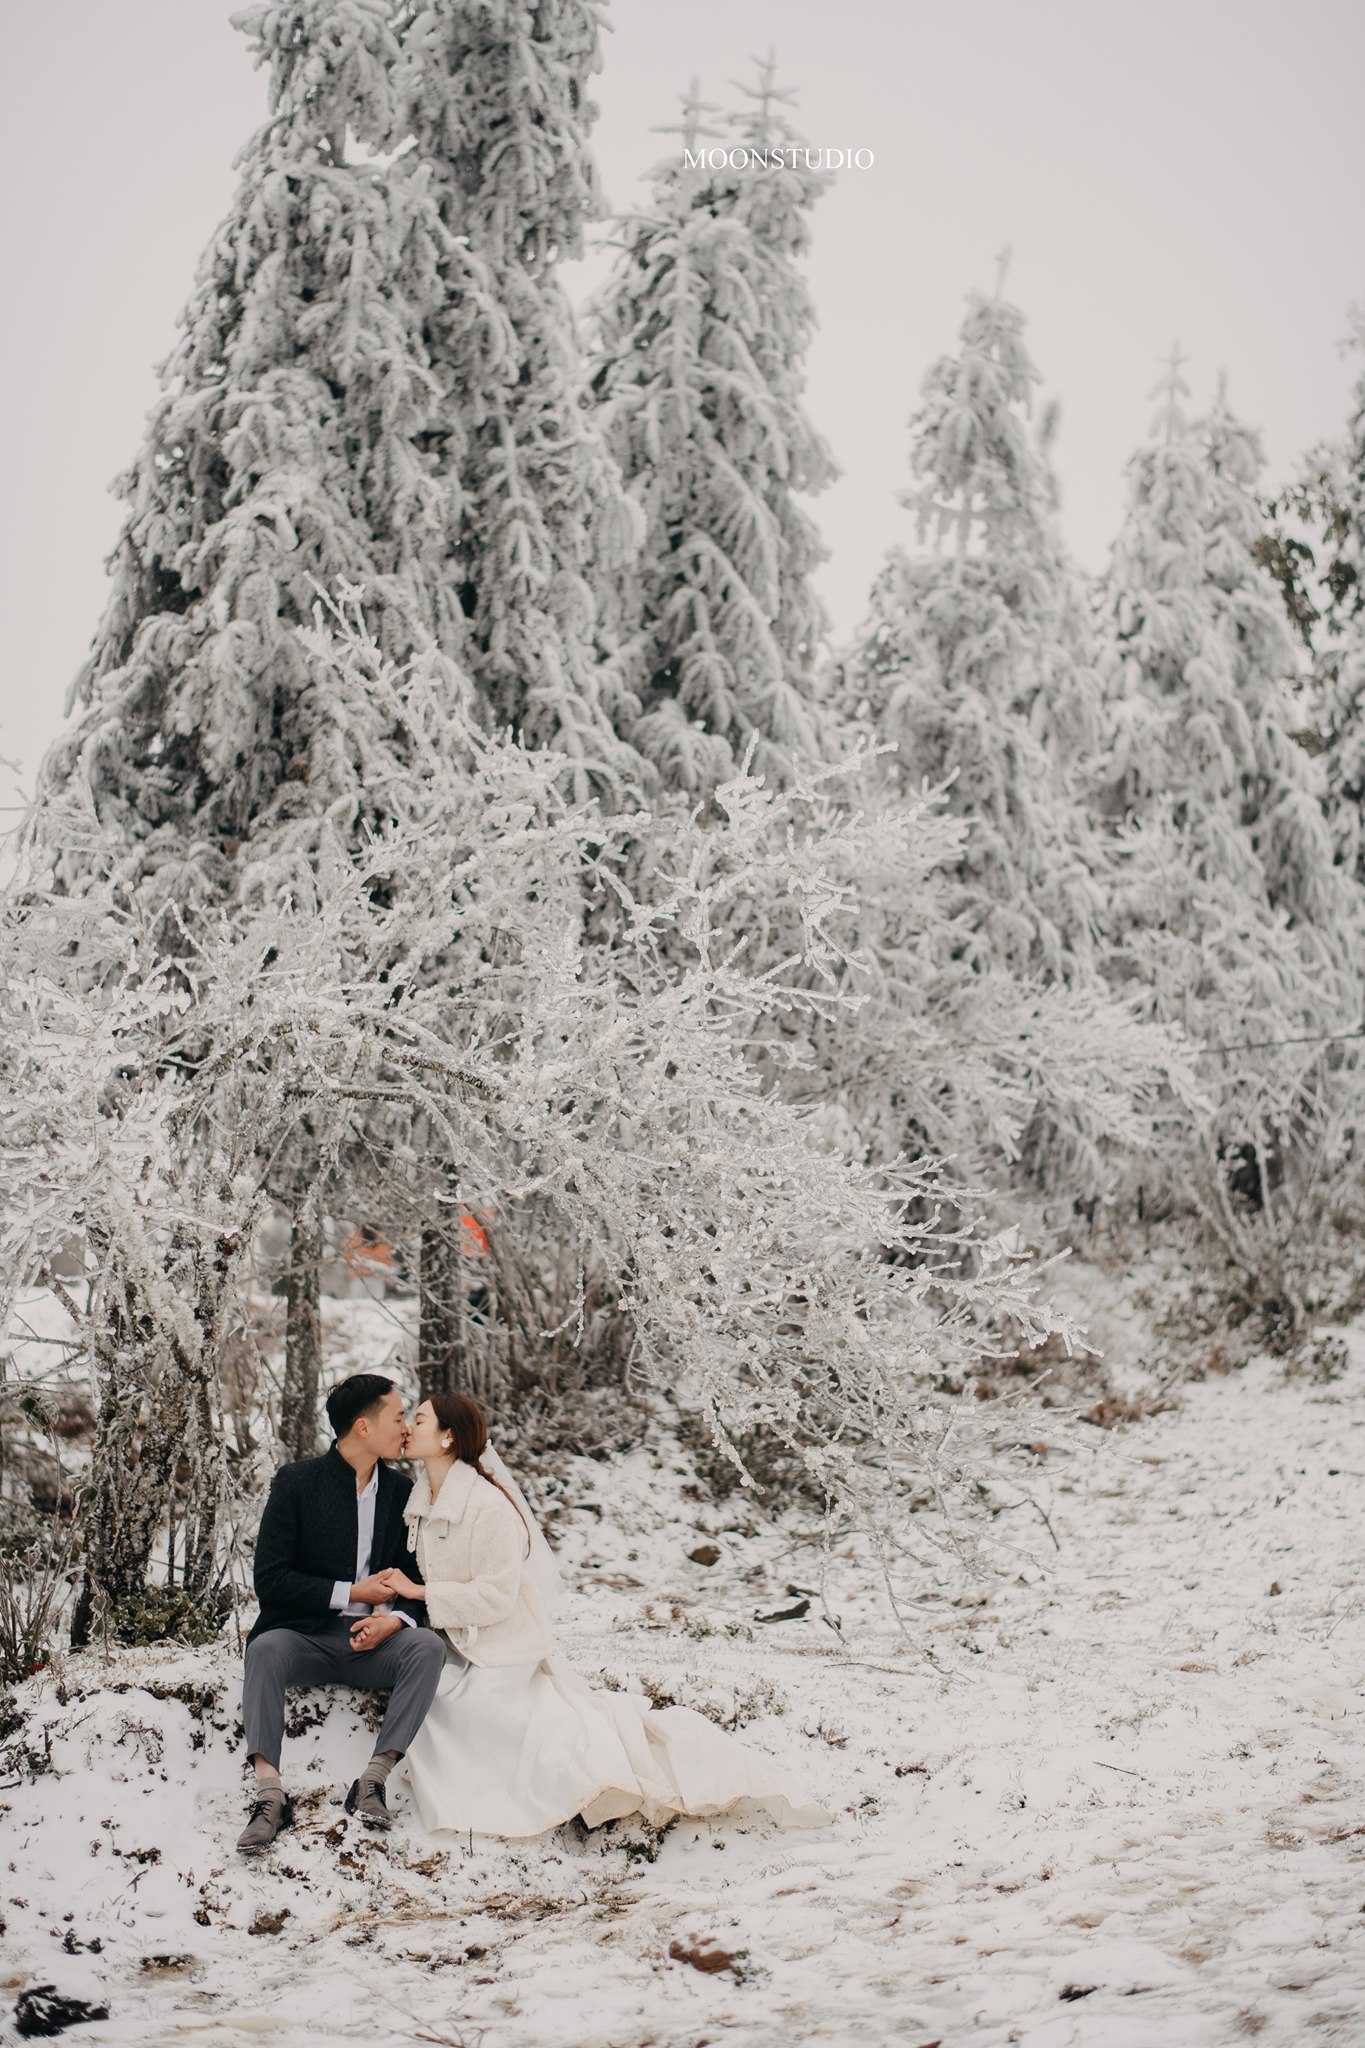 cưới trong tuyết: Hình ảnh của những cặp đôi cưới trong tuyết luôn đẹp và lãng mạn đúng không? Hãy cùng xem những bức ảnh tuyệt đẹp về cặp đôi này và cảm nhận sự ấm áp và ấn tượng mà nó mang lại.